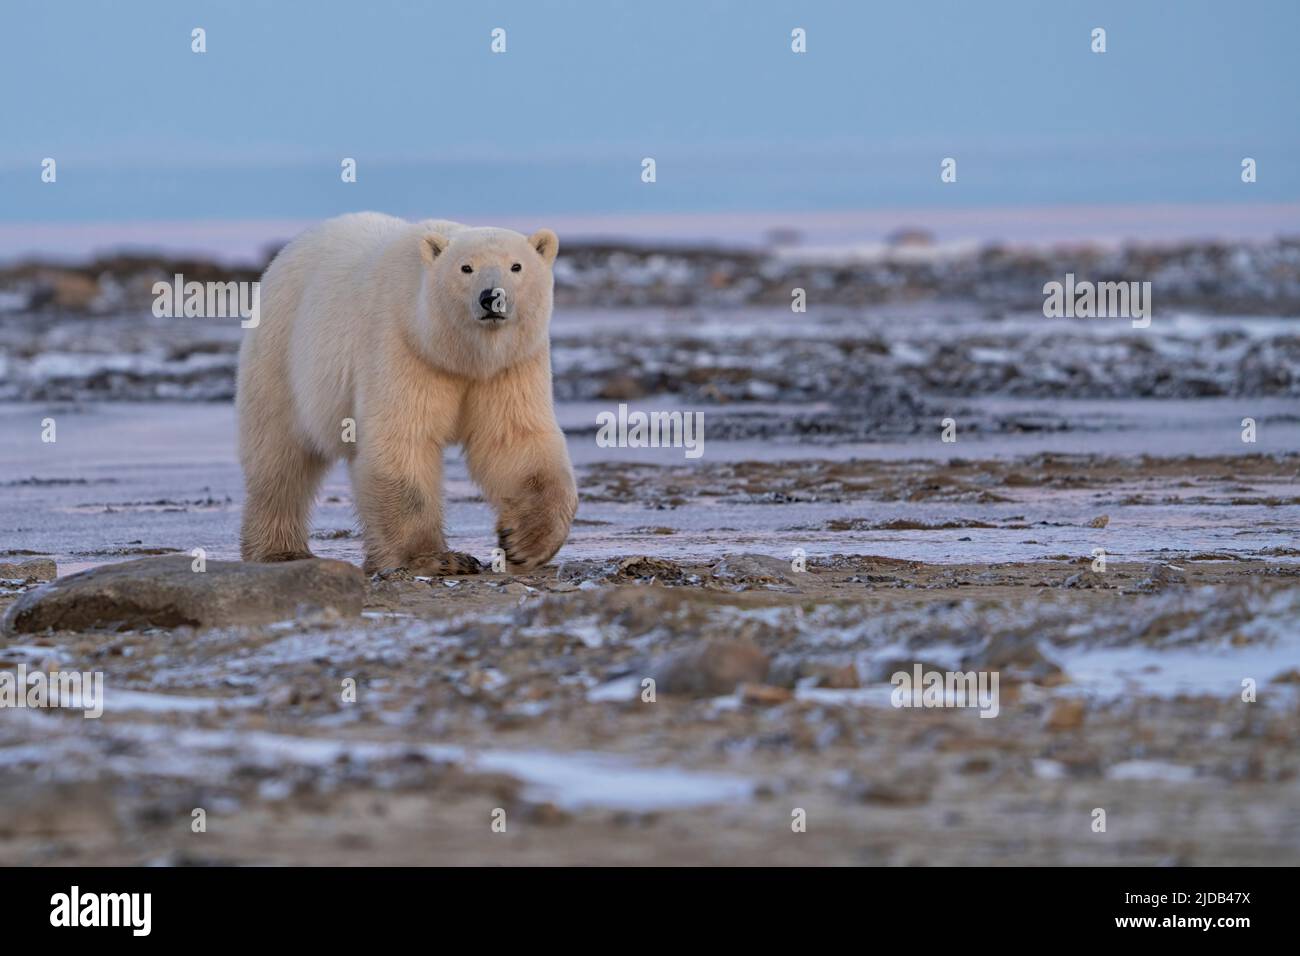 Polar bear in the wild near Churchill, Manitoba. Stock Photo